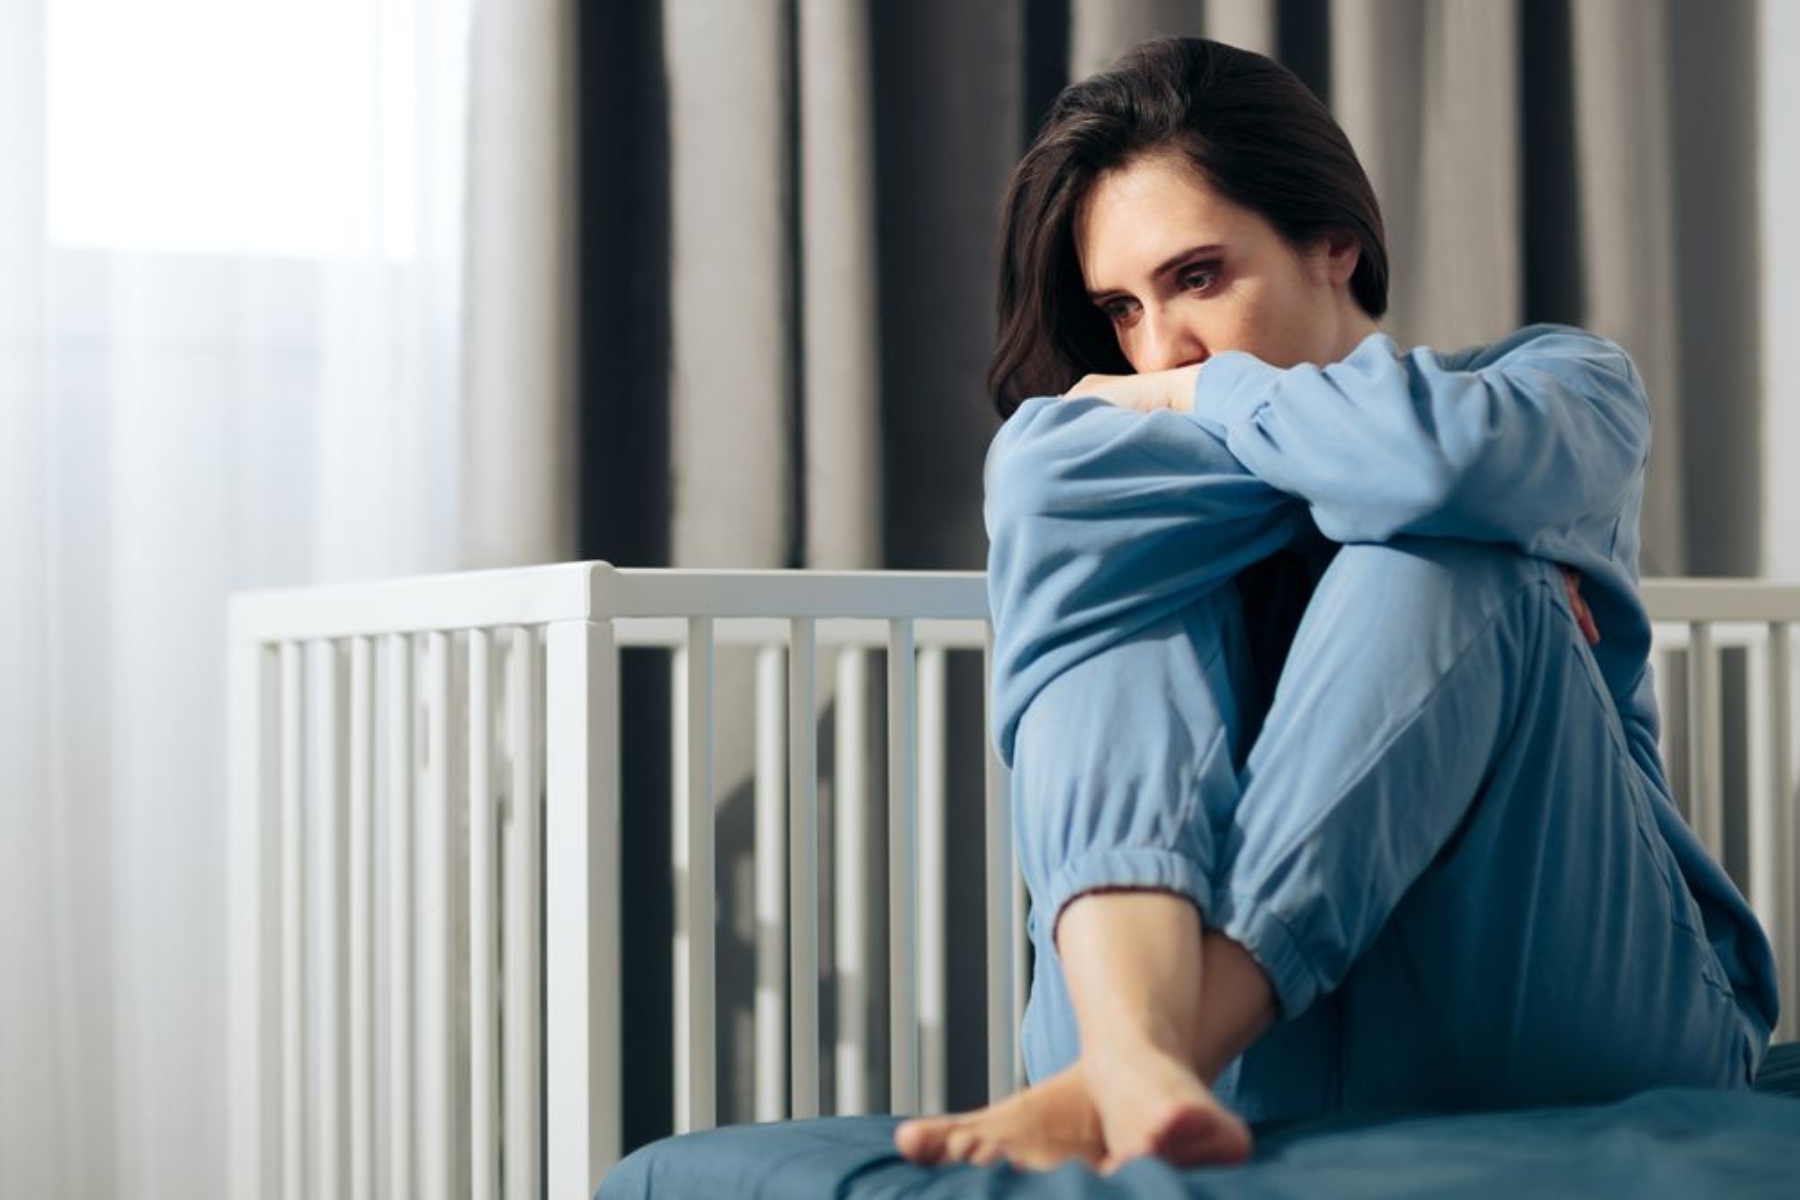 Επιλόχειο άγχος: Σε τι διαφέρει από την επιλόχεια κατάθλιψη;